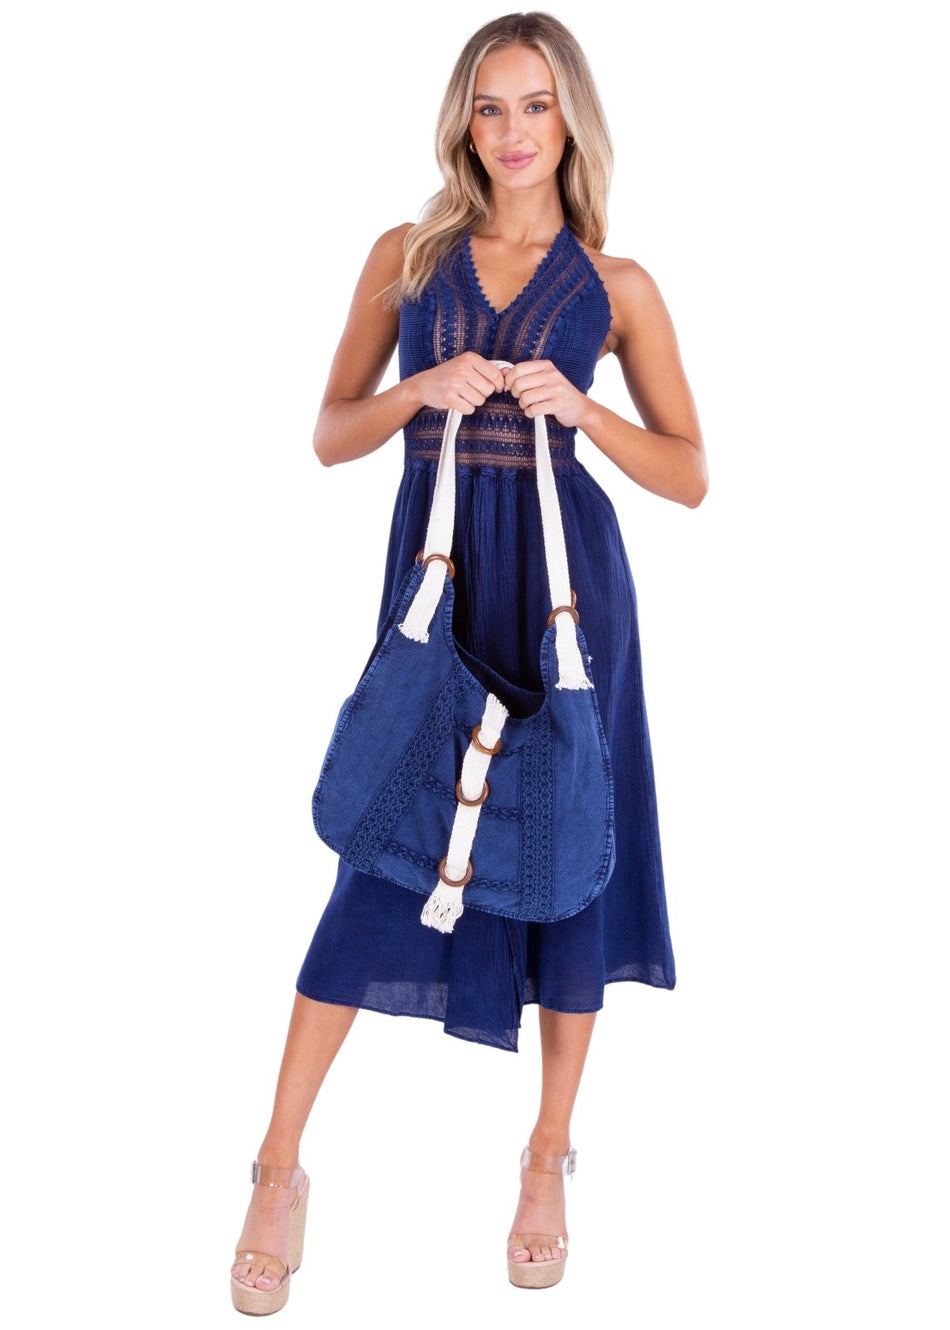 'Claudia' Cotton Bag Navy - Seaspice Resort Wear